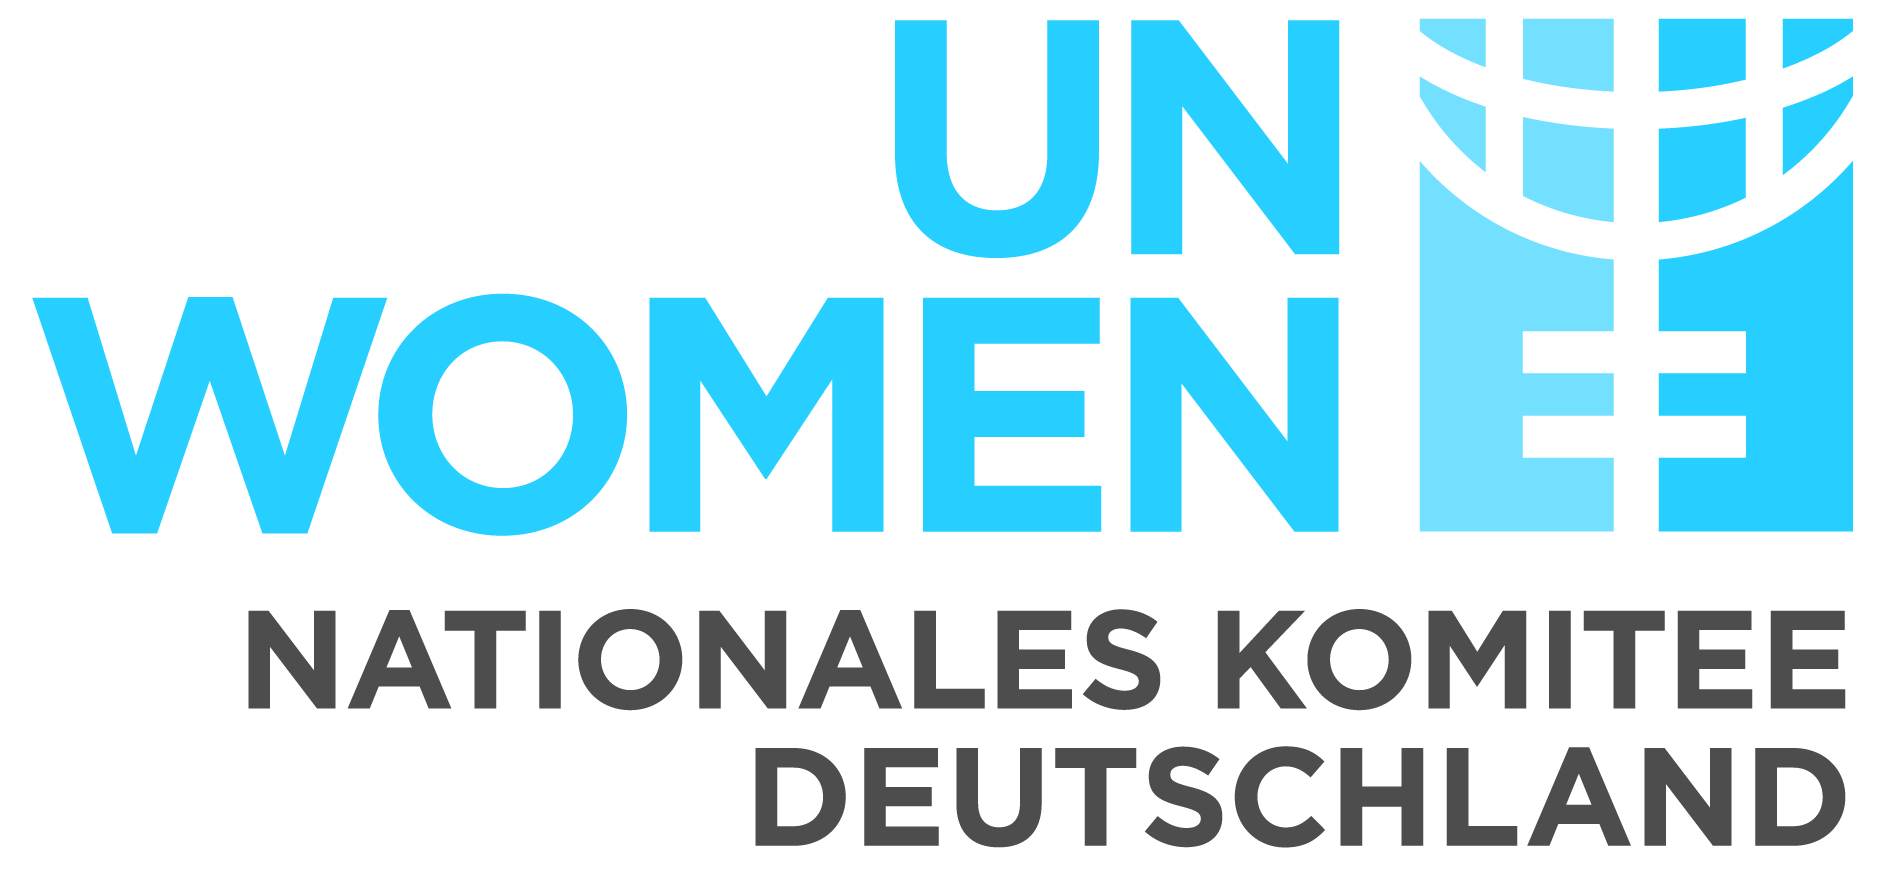 UN Women Nationales Komitee Deutschland e. V.-Logo